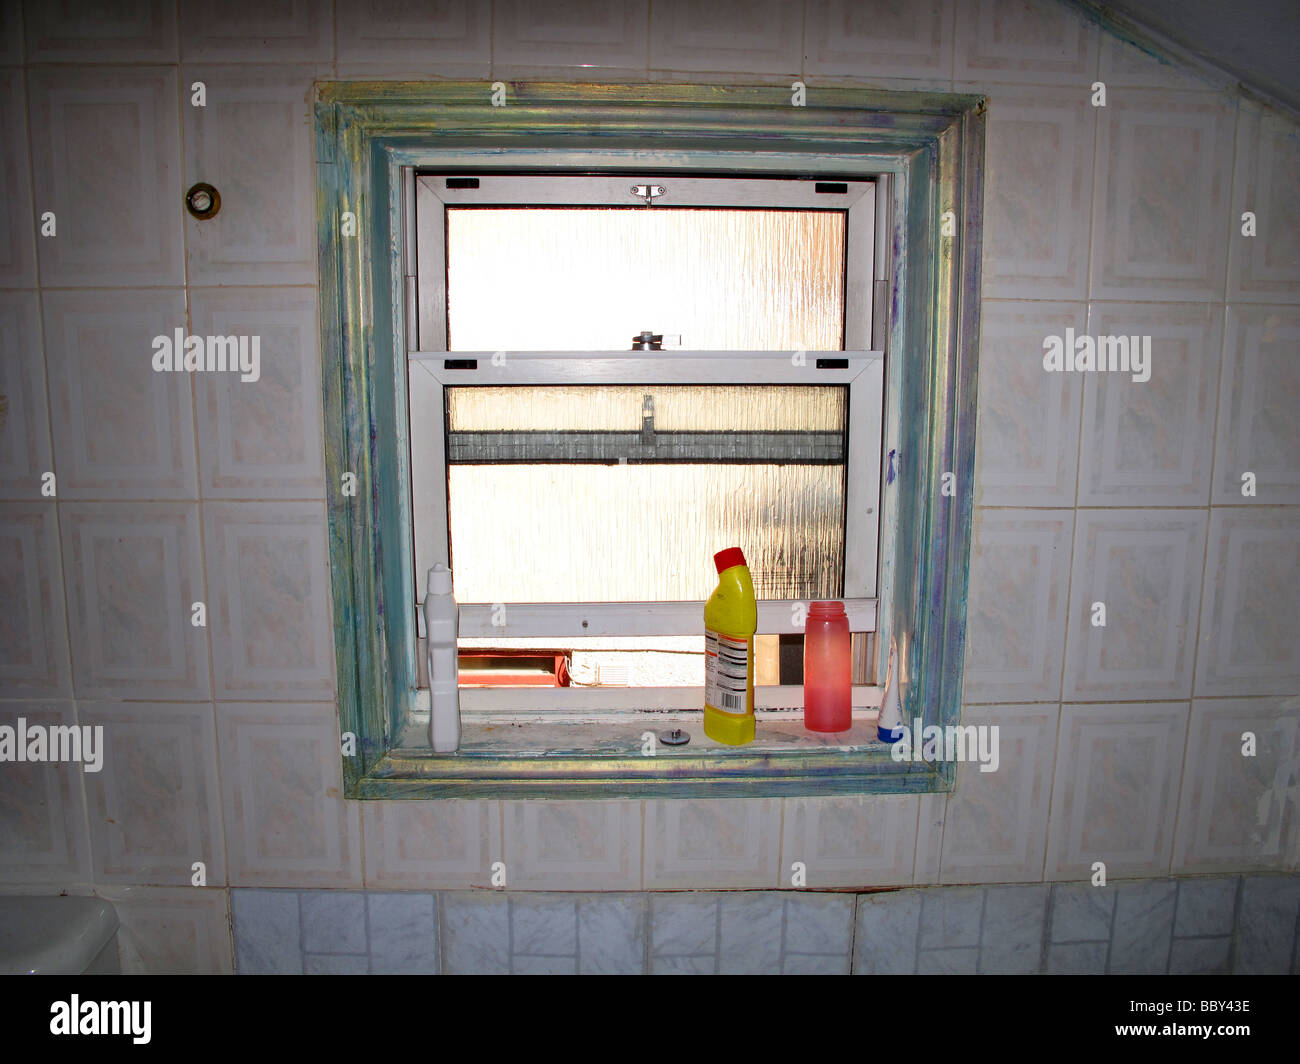 Inquadratura interna della finestra del bagno Foto Stock